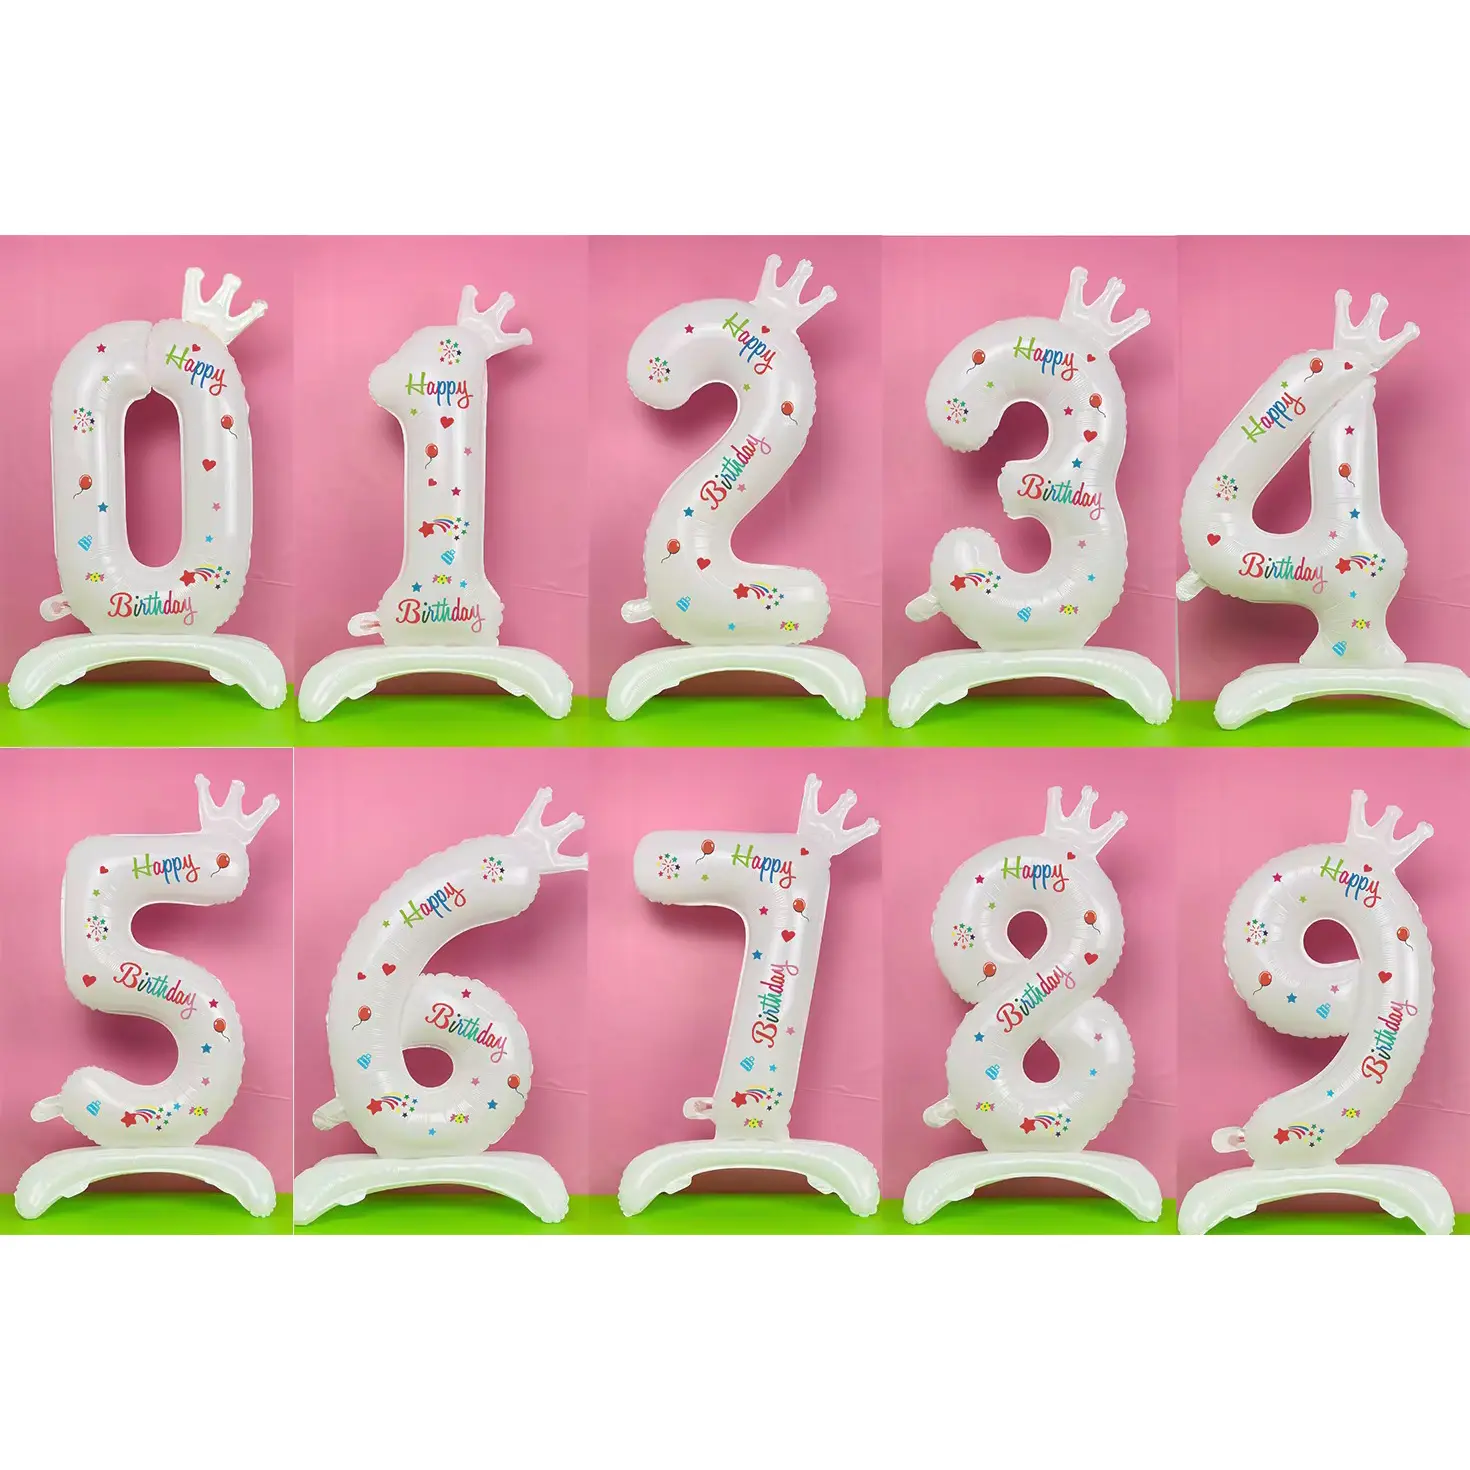 بالونات رقمي من القصدير ذاتية التثبيت بطول 32 بوصة تستخدم كزينة لحفلات الزفاف وأعياد الميلاد وحفلات استقبال المولود حديثًا